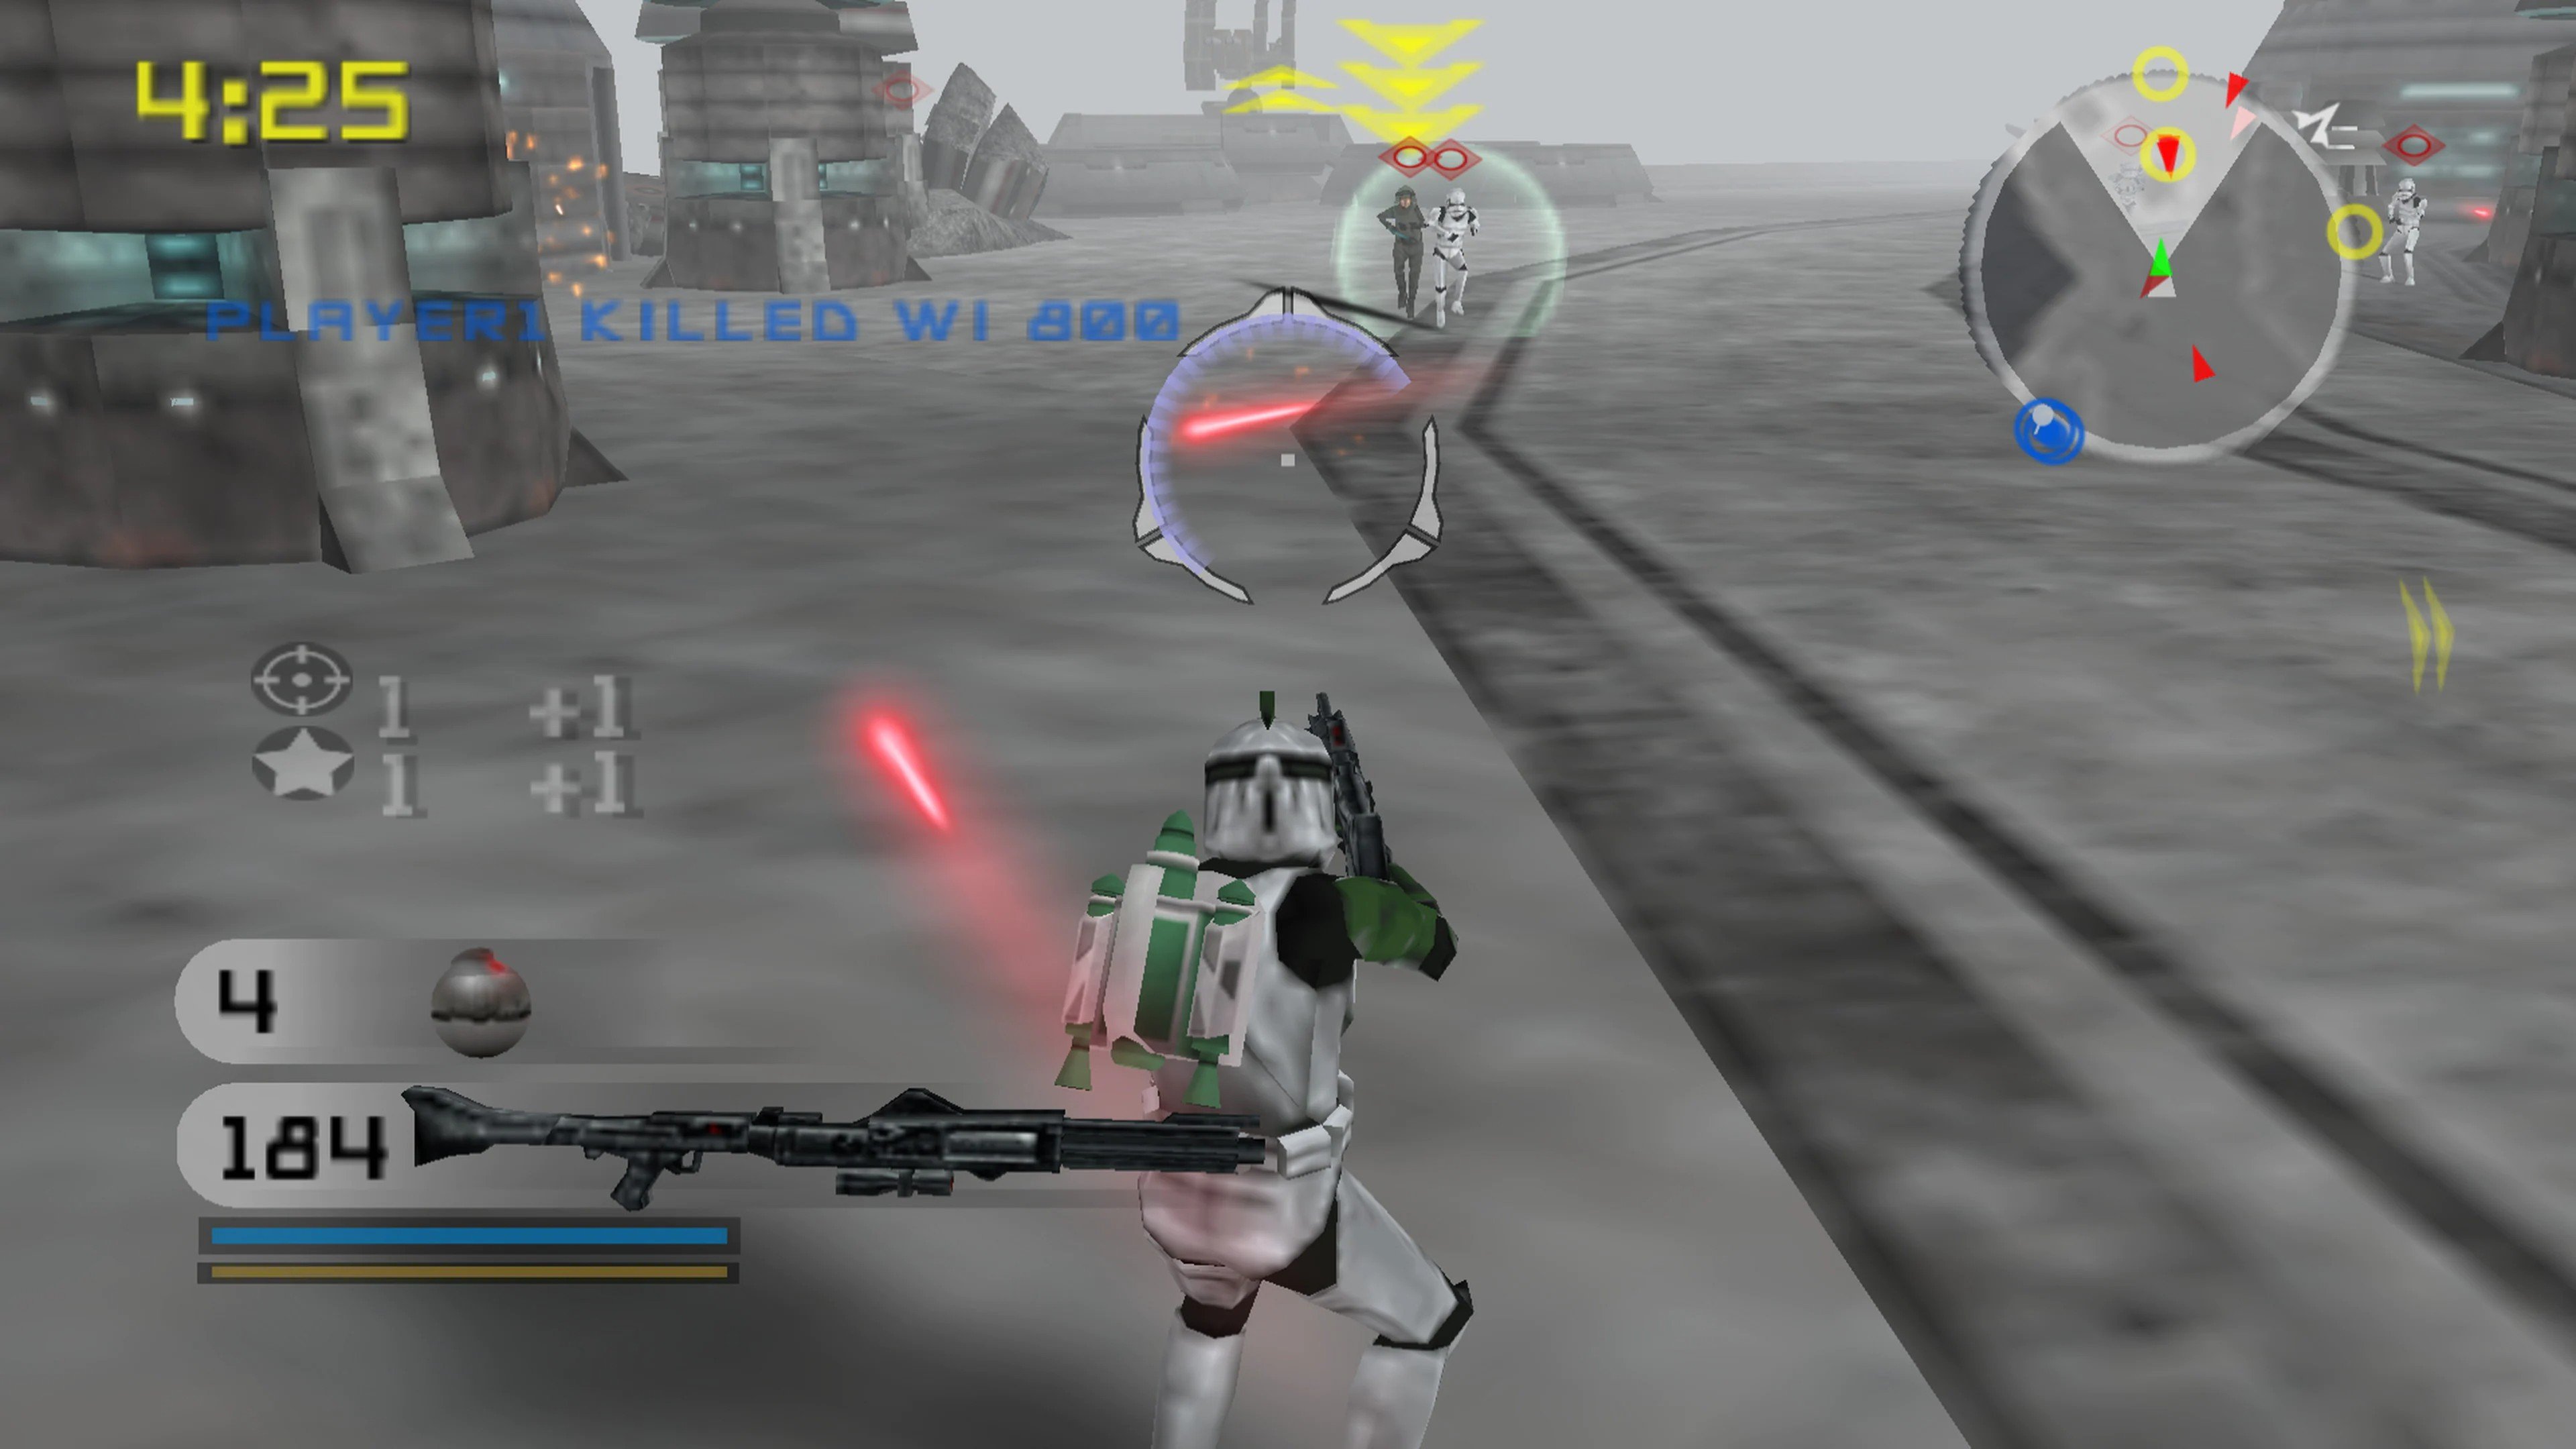 Star Wars - Battlefront II ROM - PS2 Download - Emulator Games